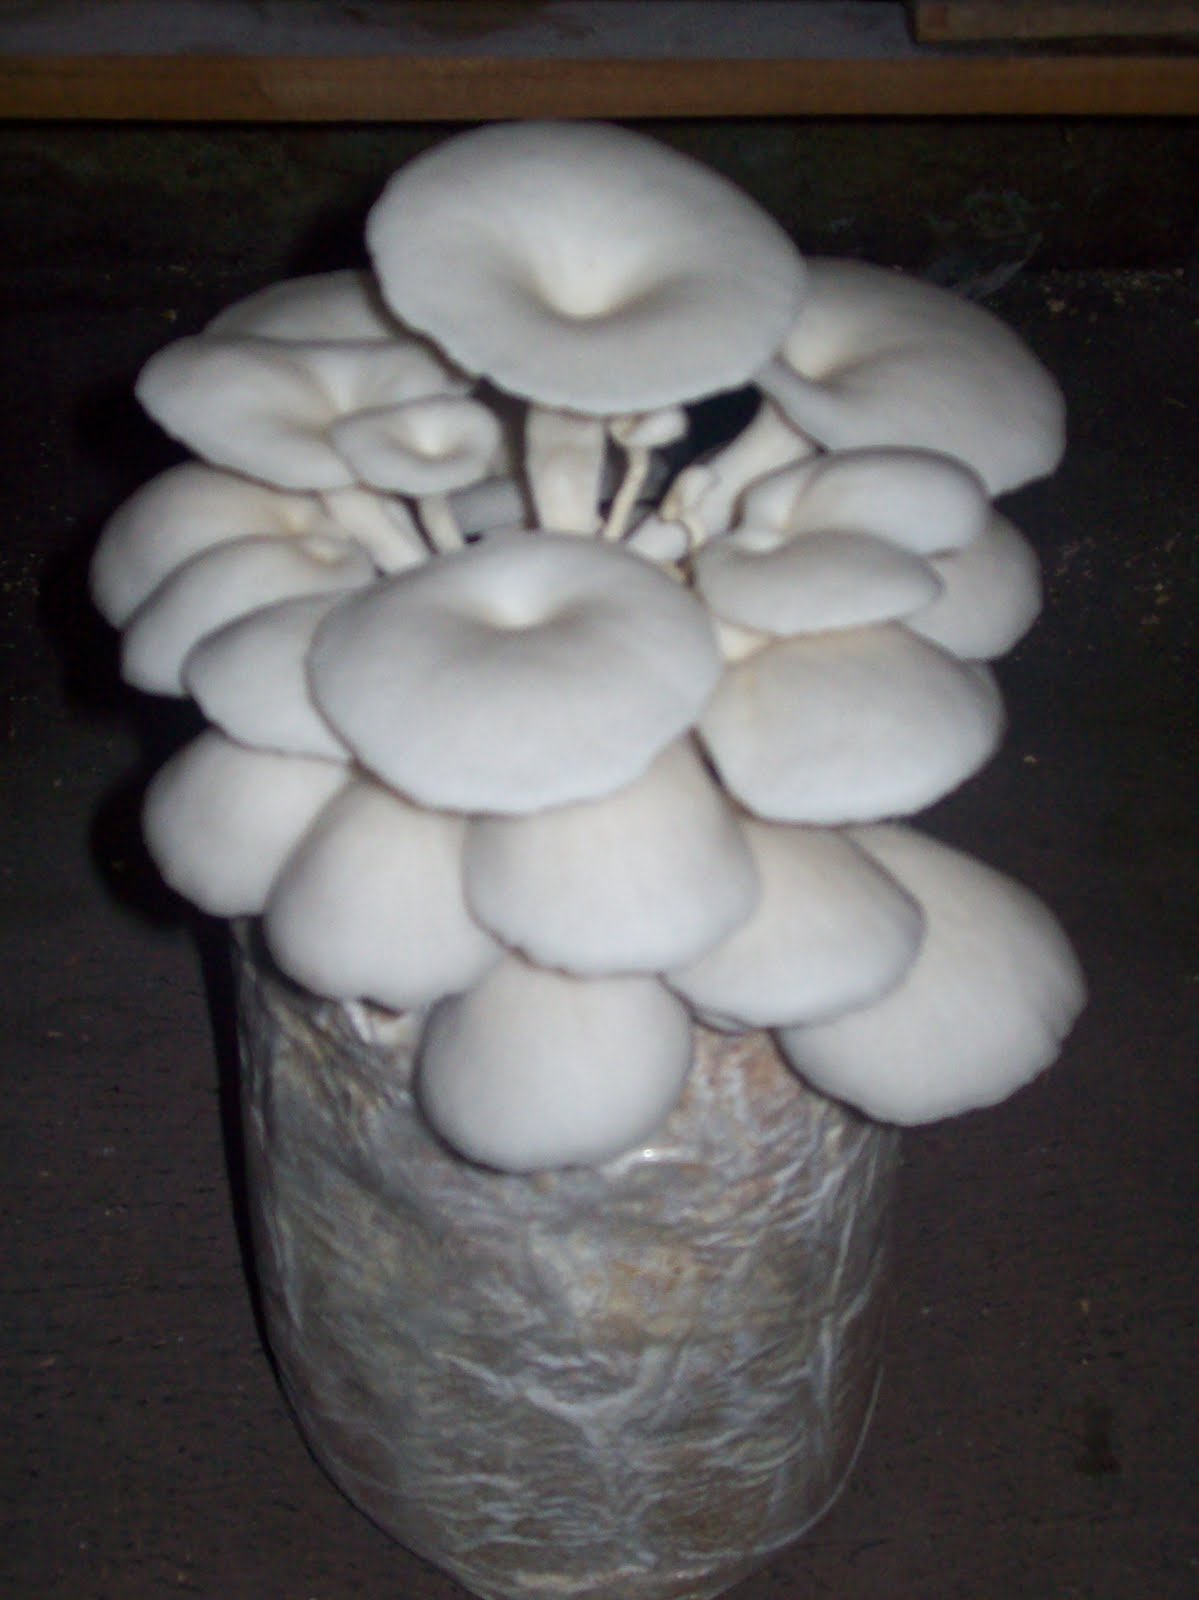  jamur  tiram budidaya jamur  usaha jamur  jual jamur  